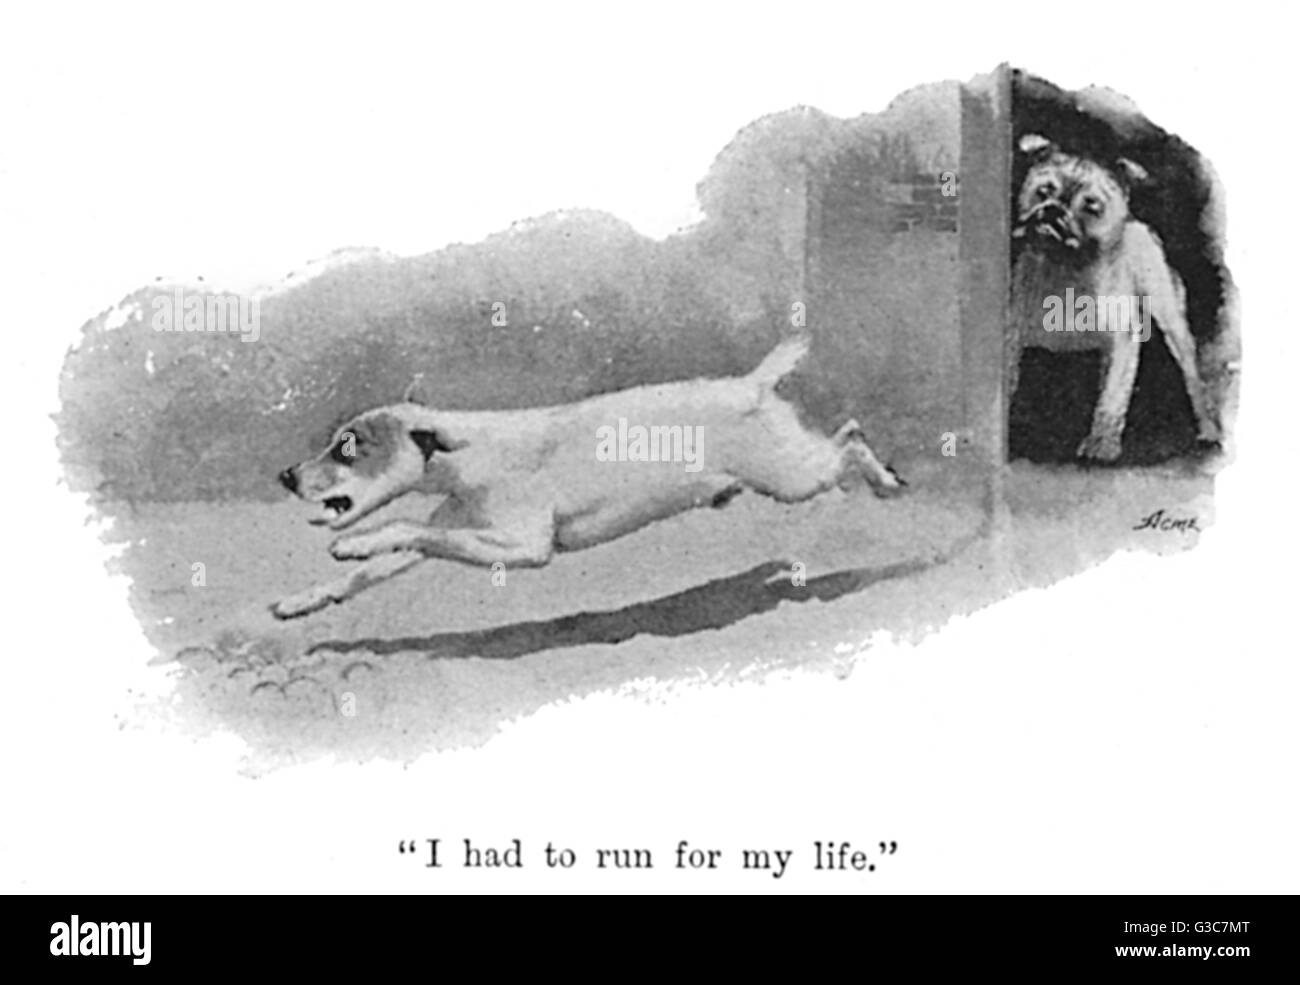 Illustration von Cecil Aldin, läuft vor Ort weg von Scrunch, der Metzger Bulldog, obwohl sie später Freunde machen.  "Ich musste für mein Leben zu führen."       Datum: 1895 Stockfoto